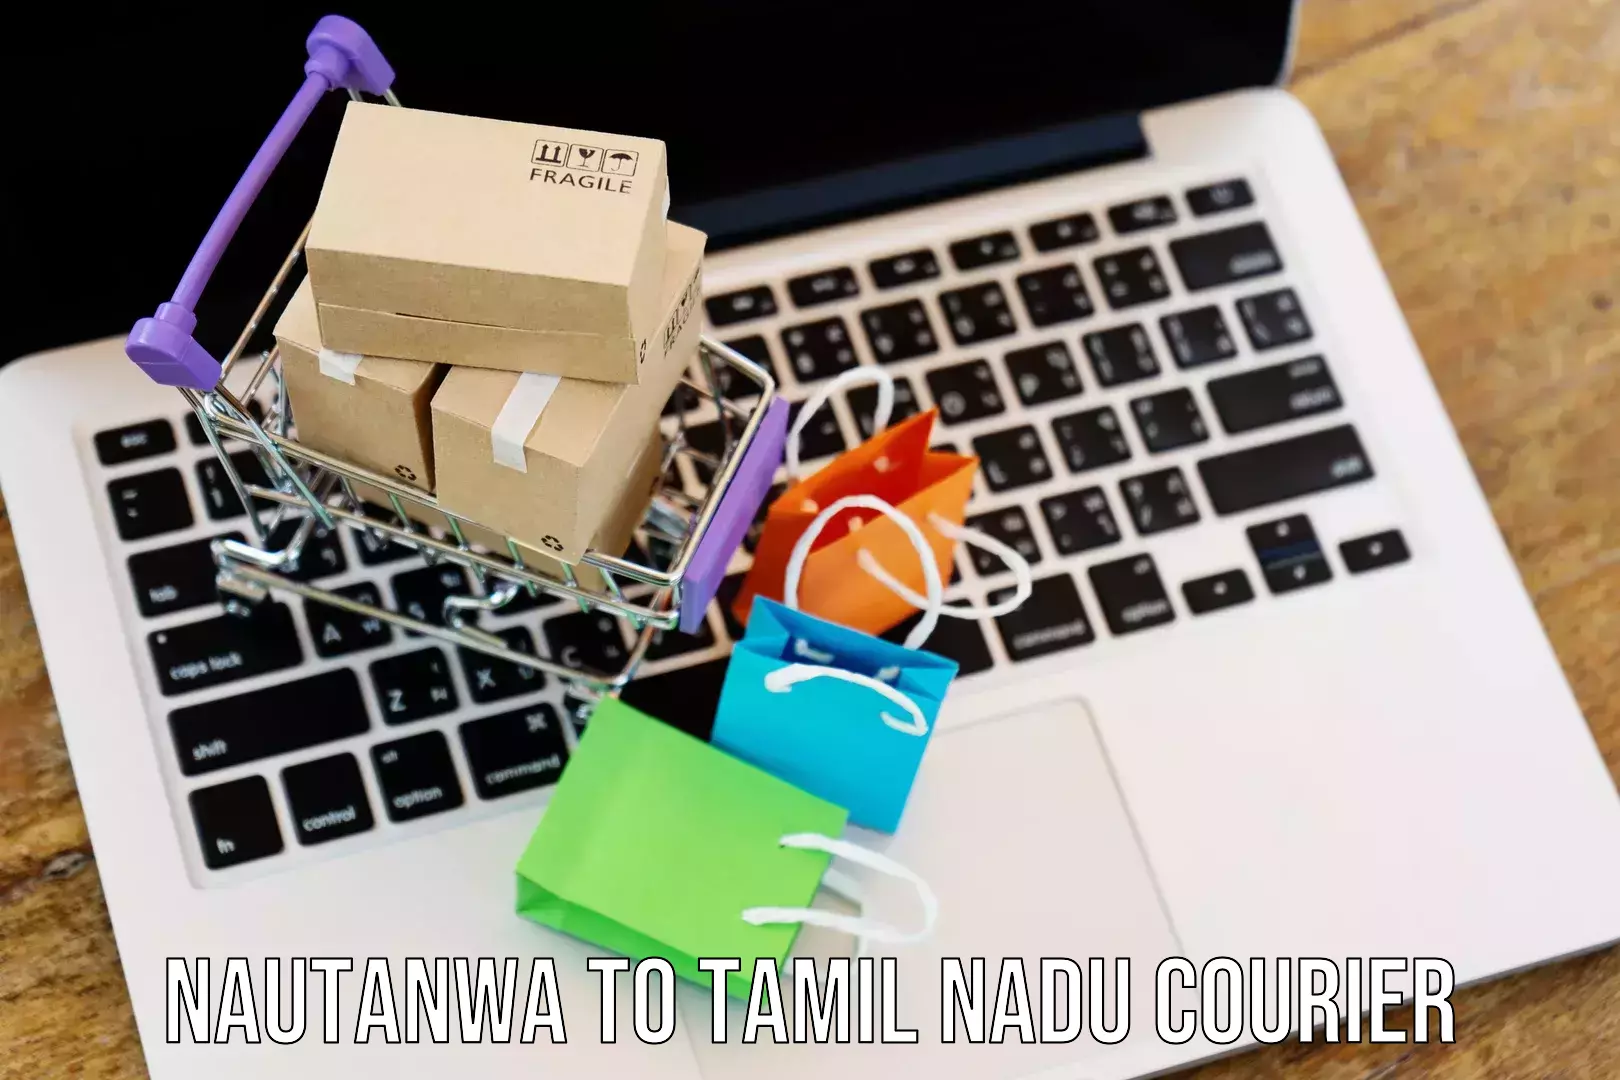 Express logistics providers in Nautanwa to Tamil Nadu